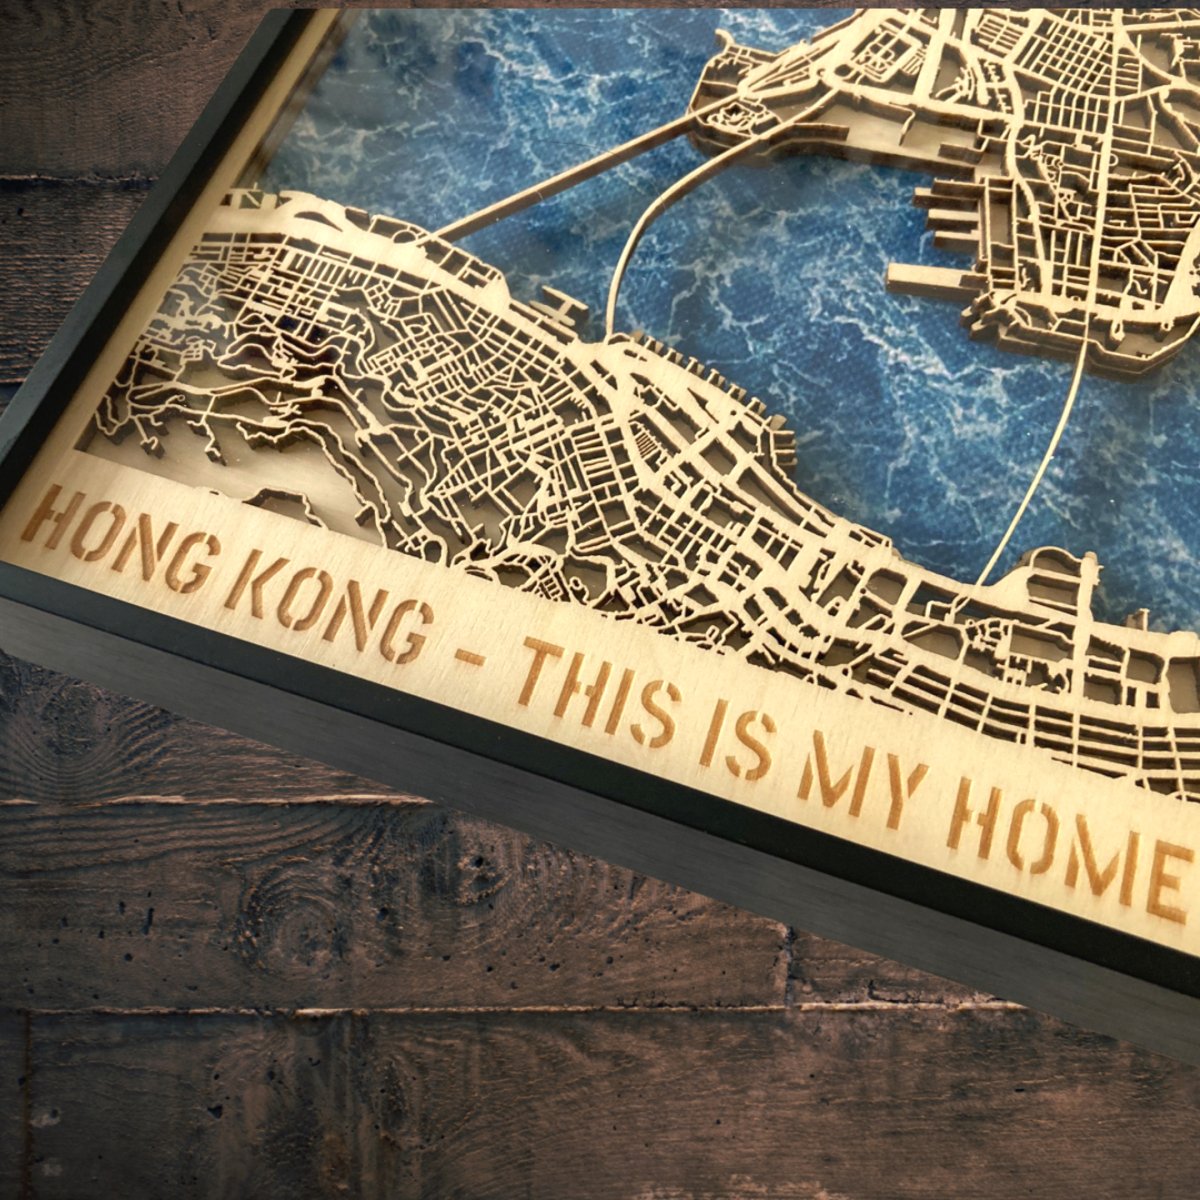 立體木雕刻香港地圖連金屬框 32cm - Hong Kong Maper